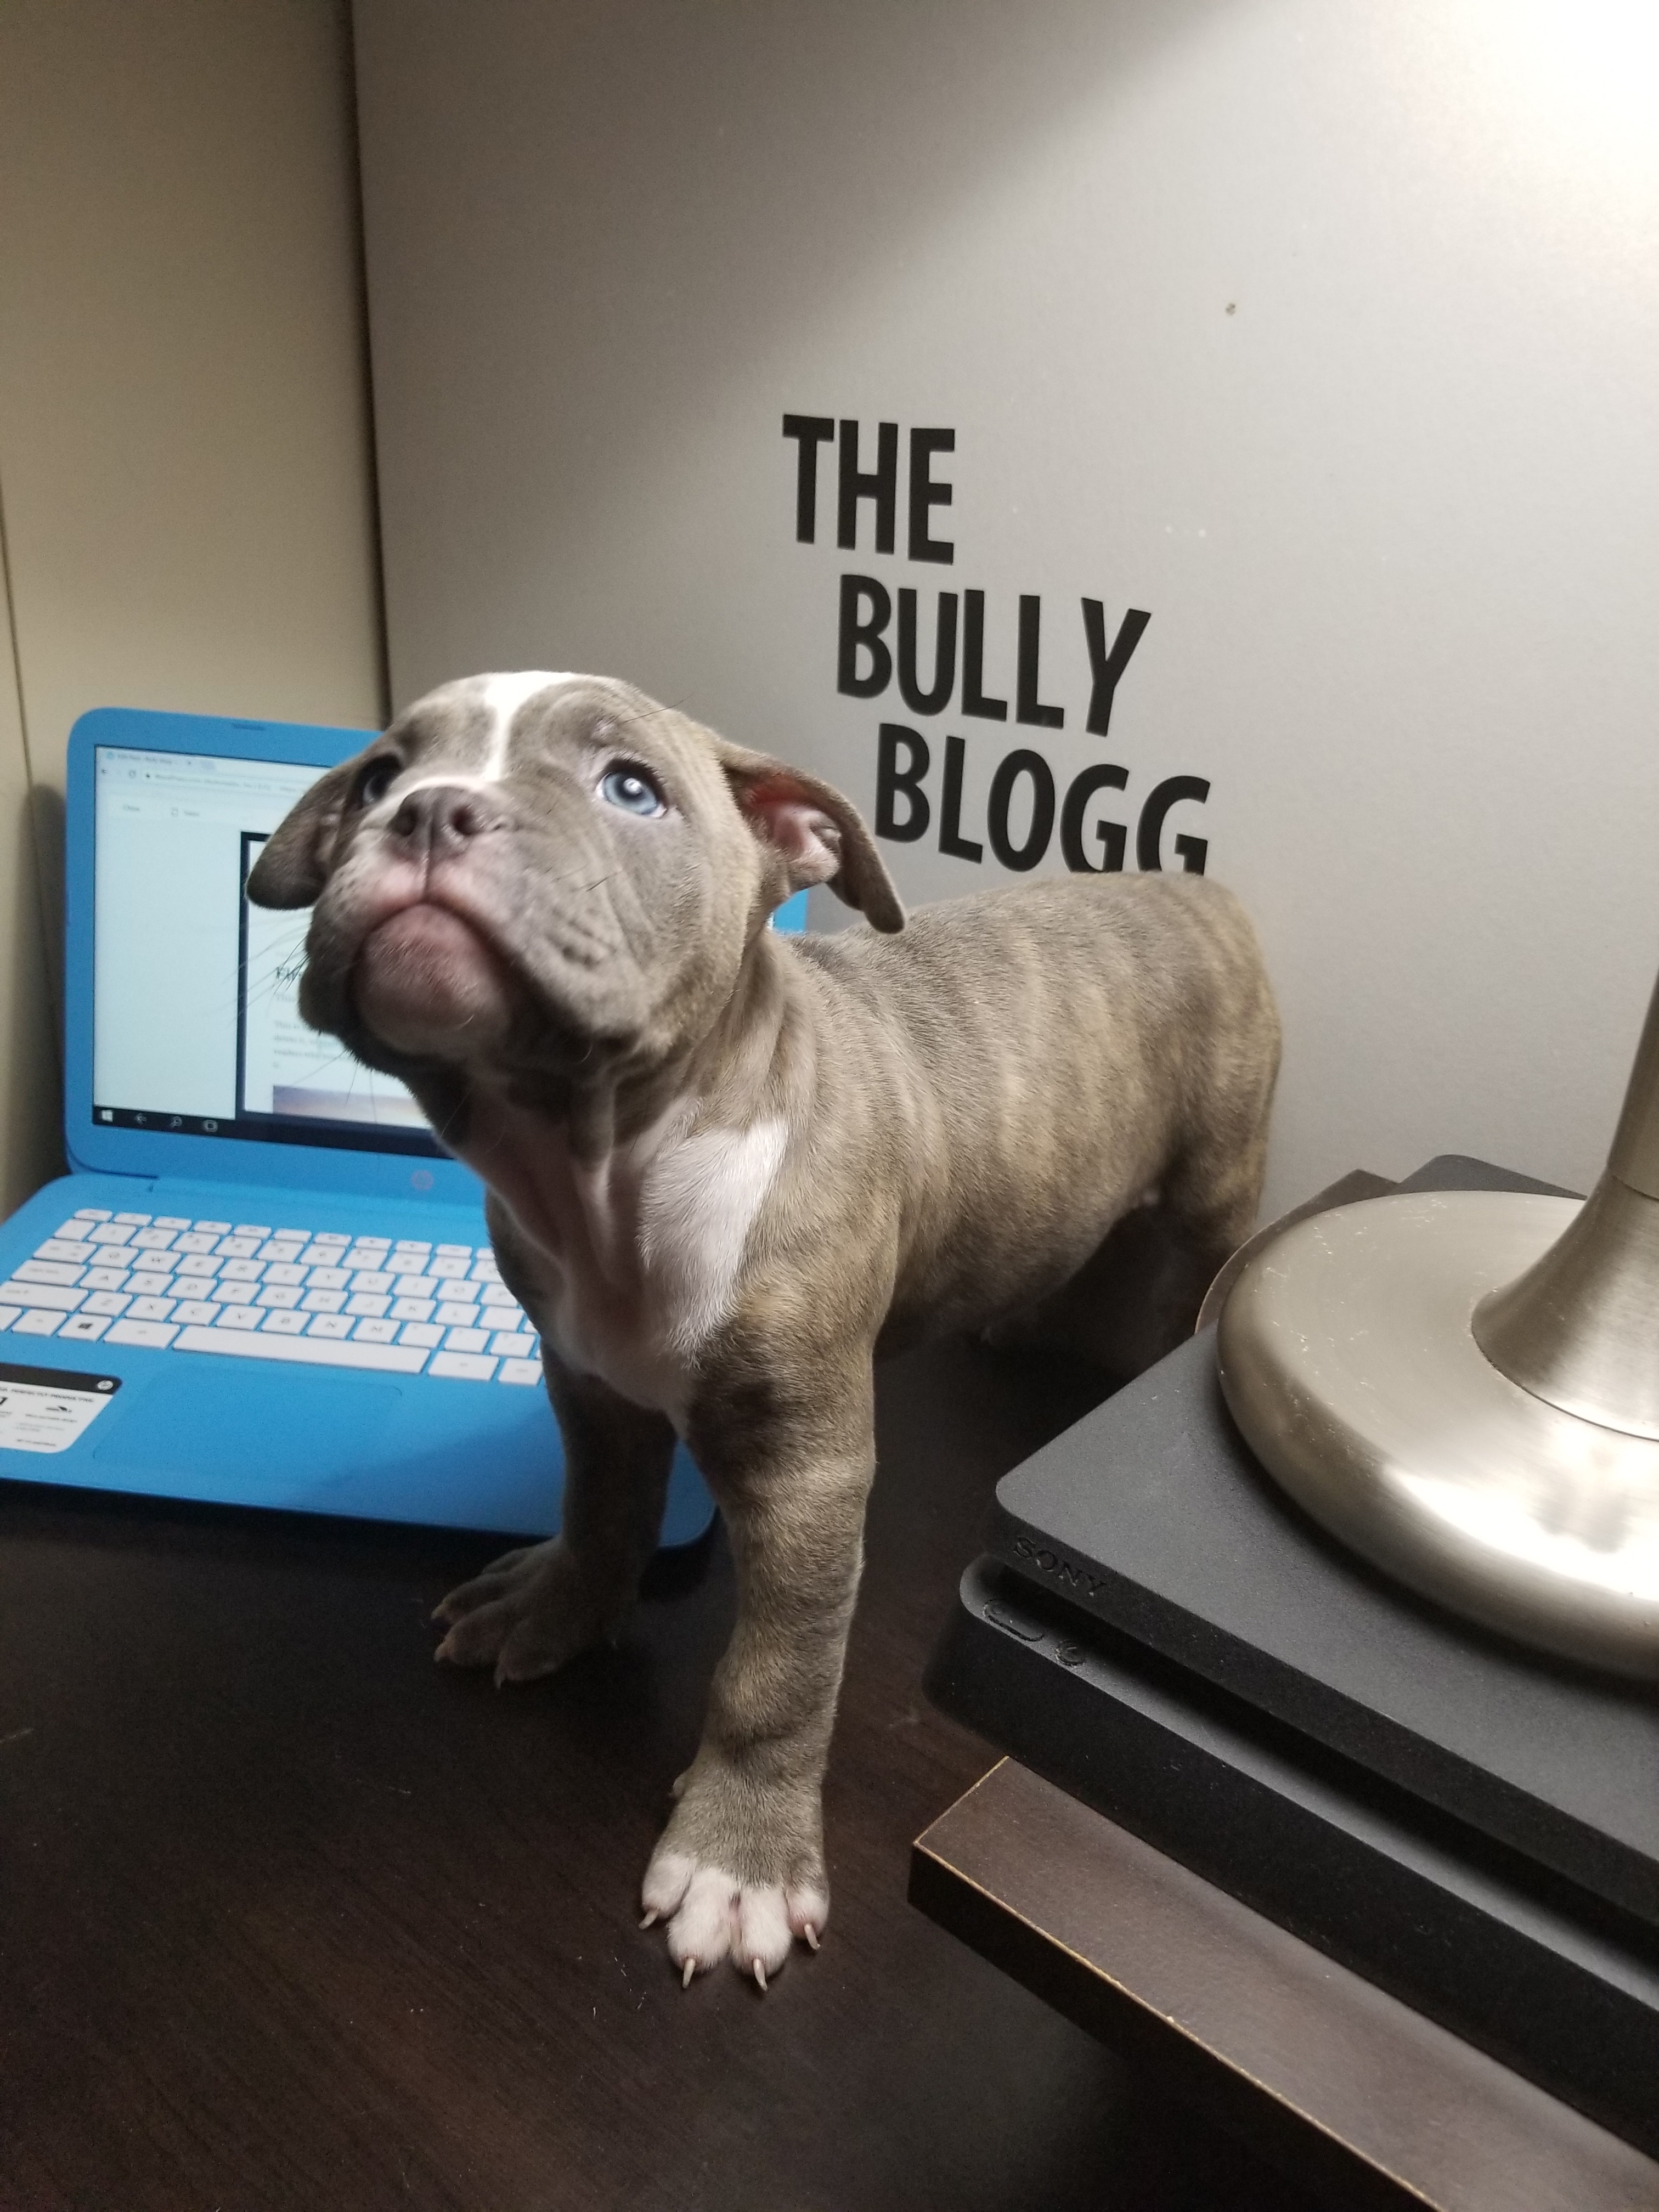 The Bully Blog